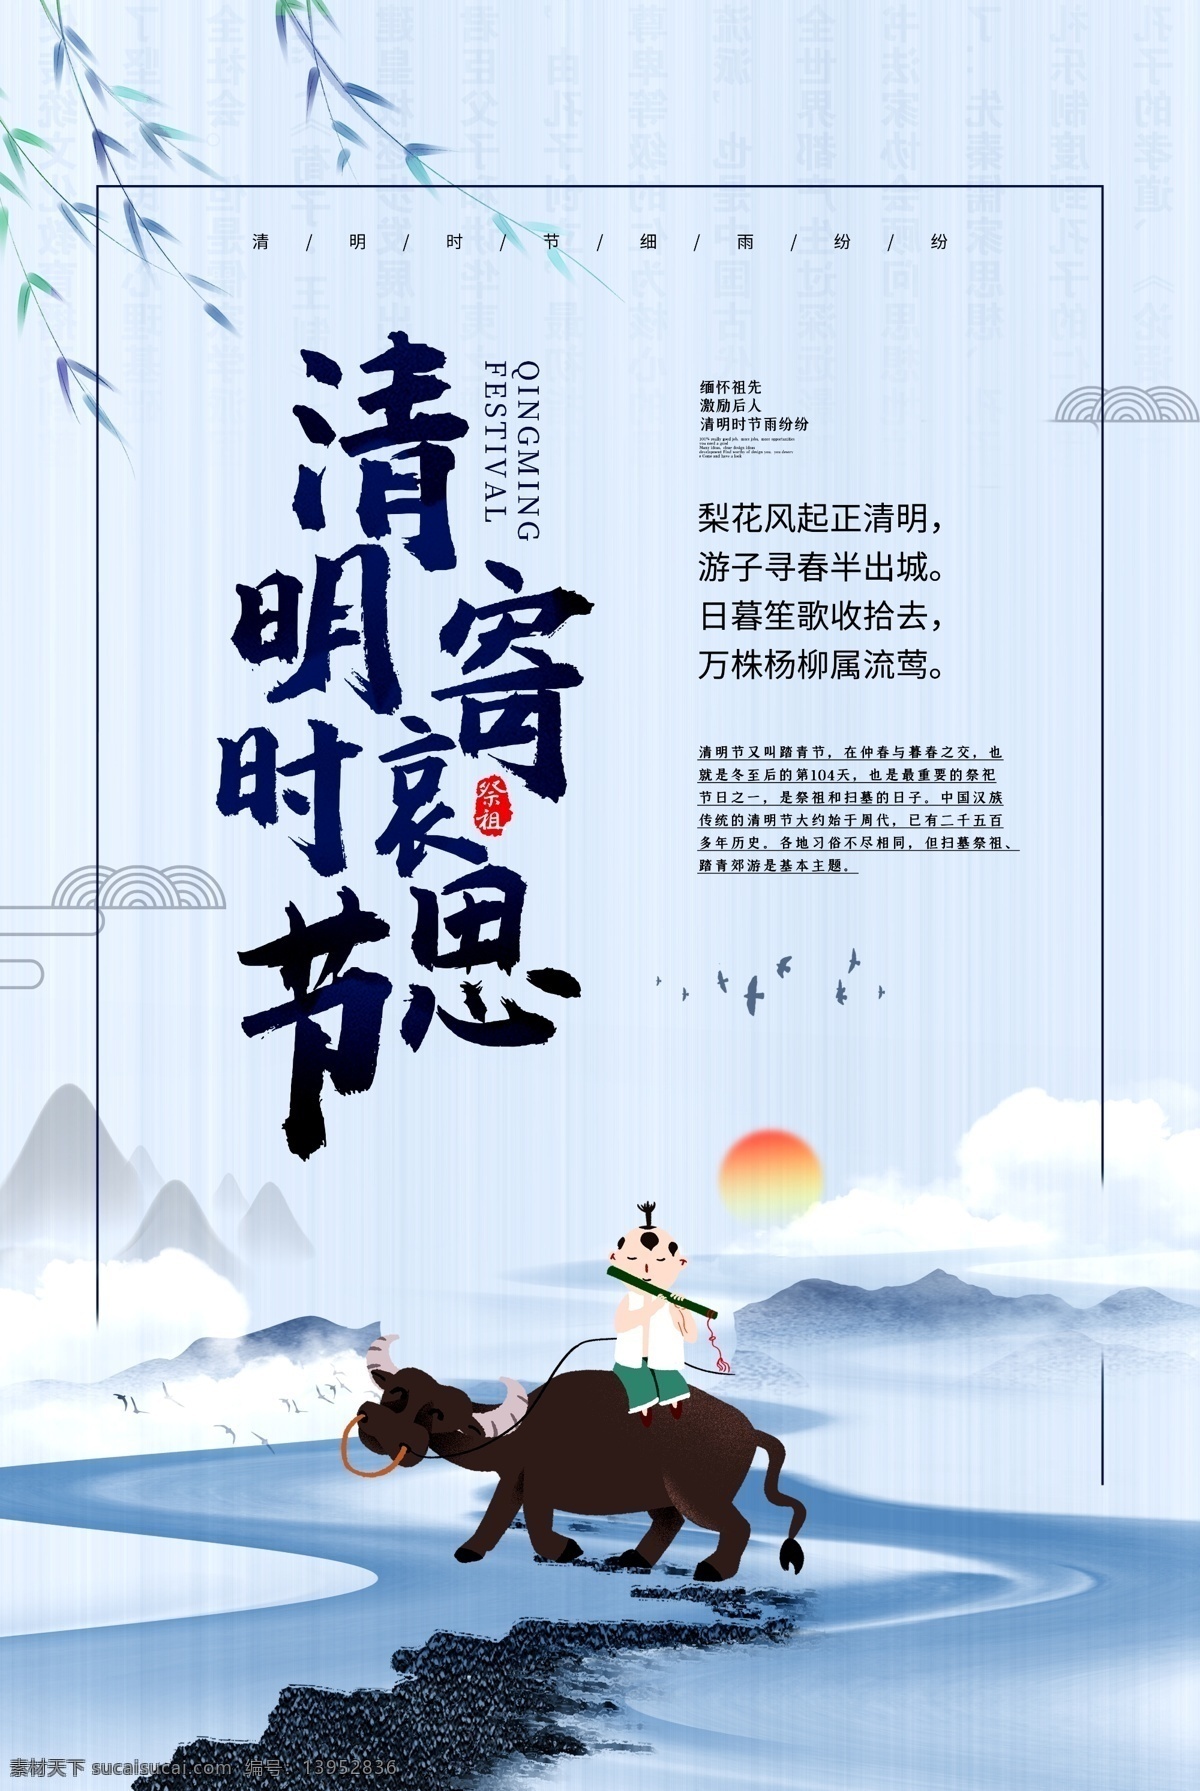 清明 时节 寄 哀思 蓝色 简洁 海报 传统风格 传统节日 二十四节气 中国风海报 节气文化